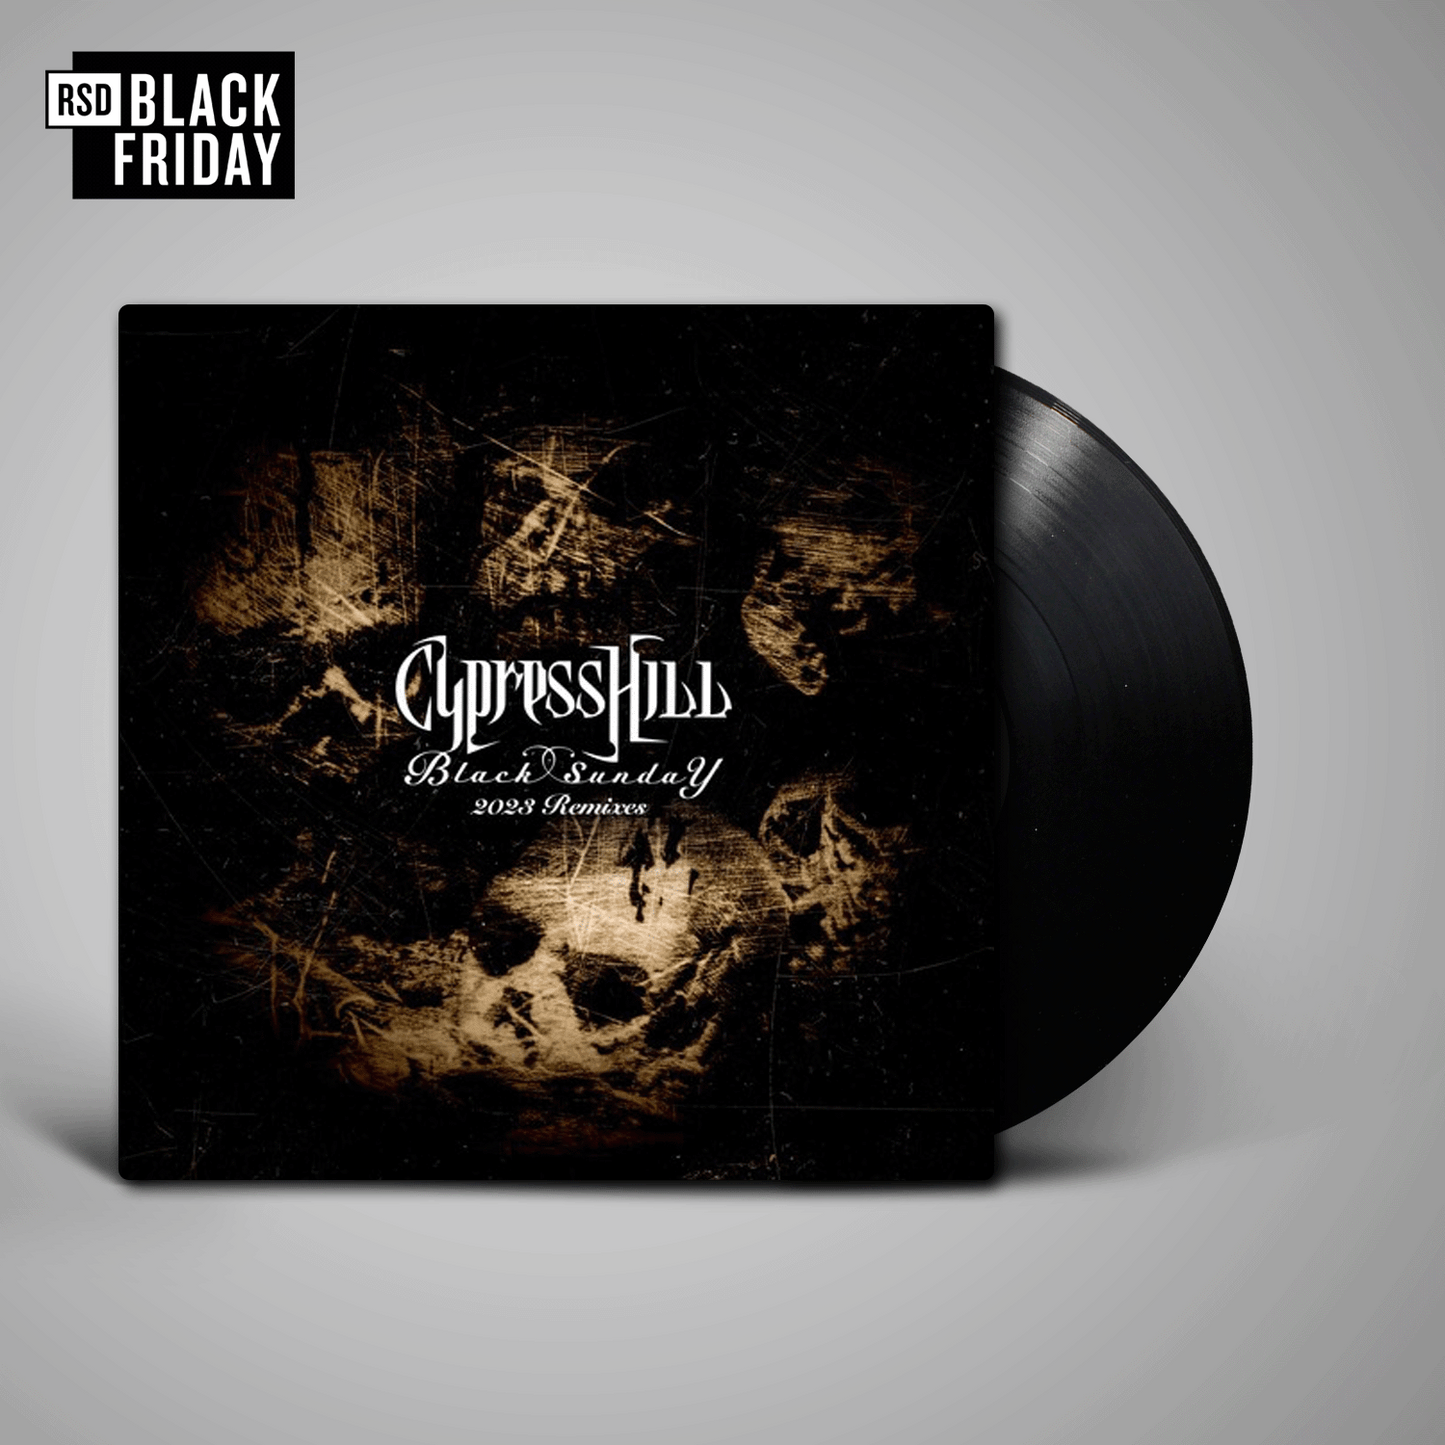 Cypress Hill - Black Sunday Remixed